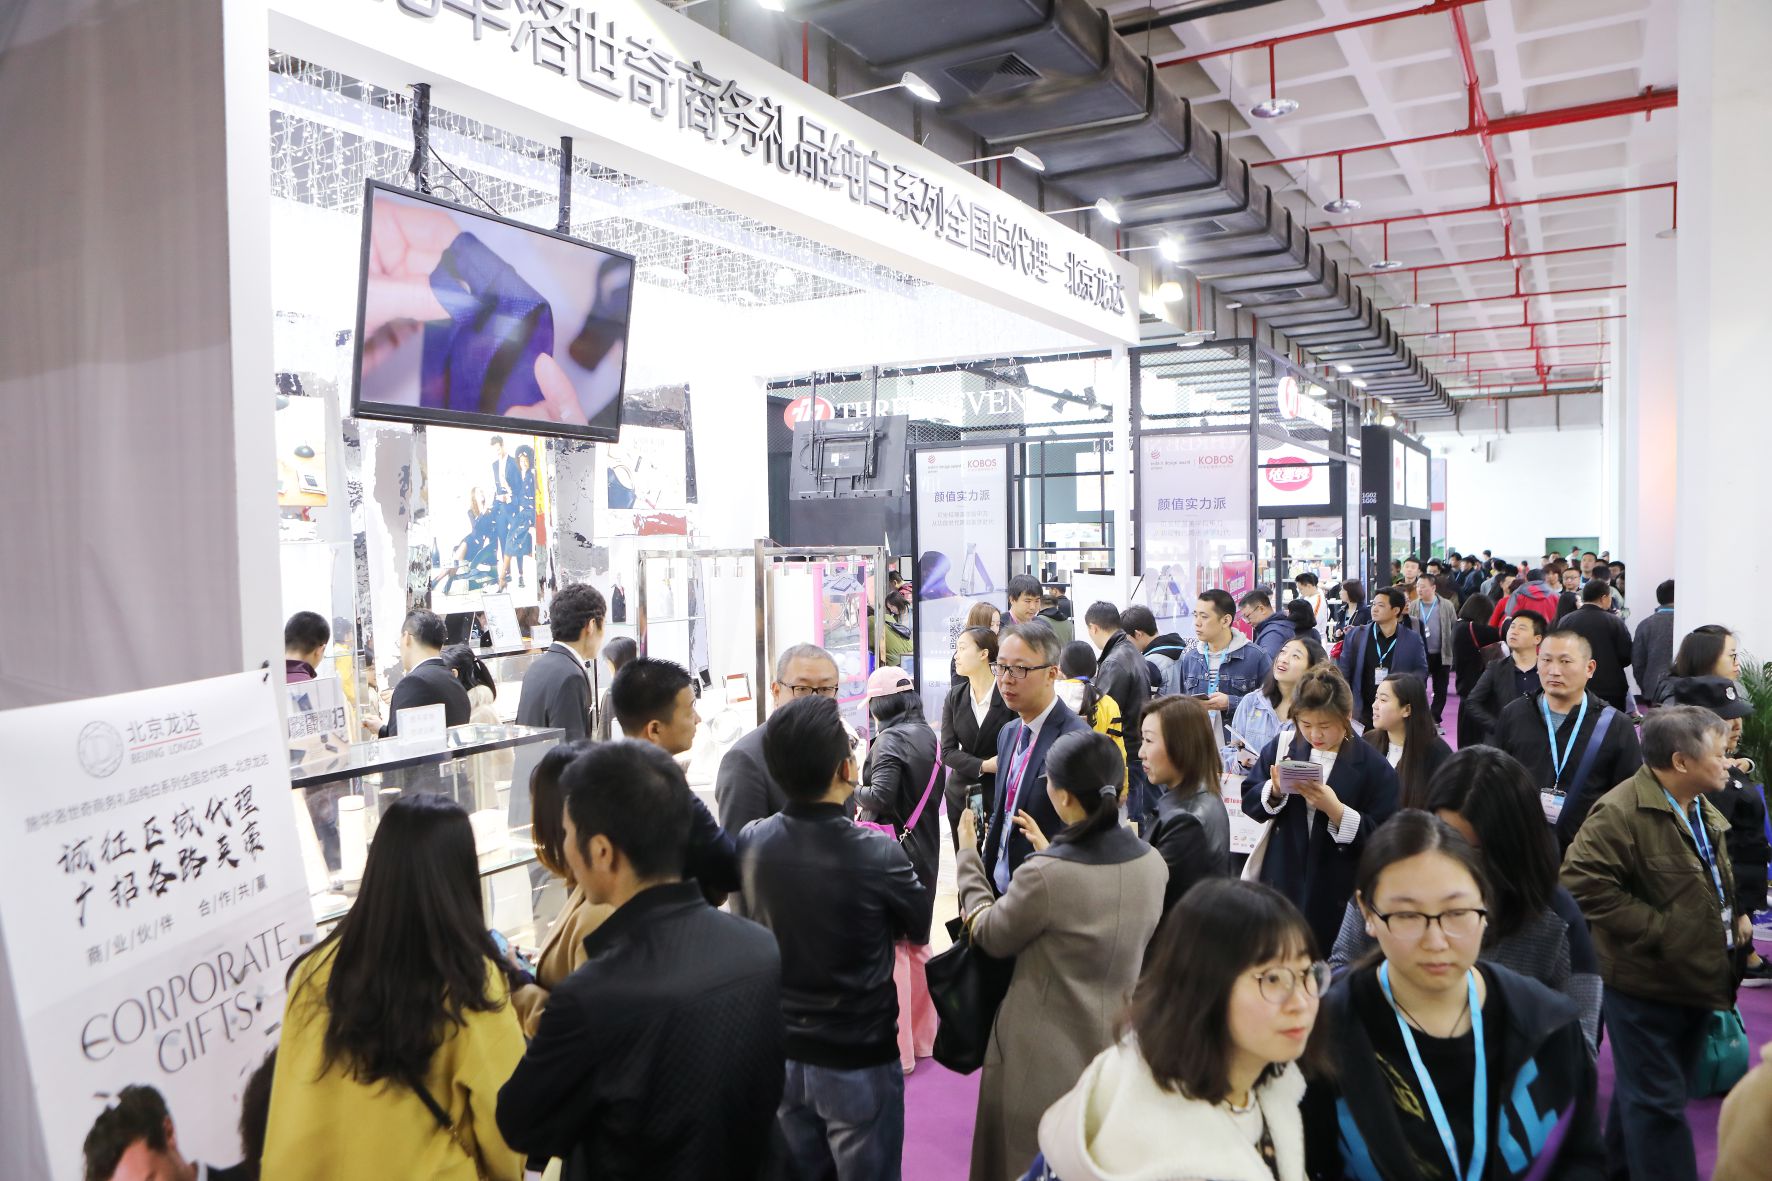 把握新消费趋势 北京礼品展全力打造8年来最大规模行业盛会